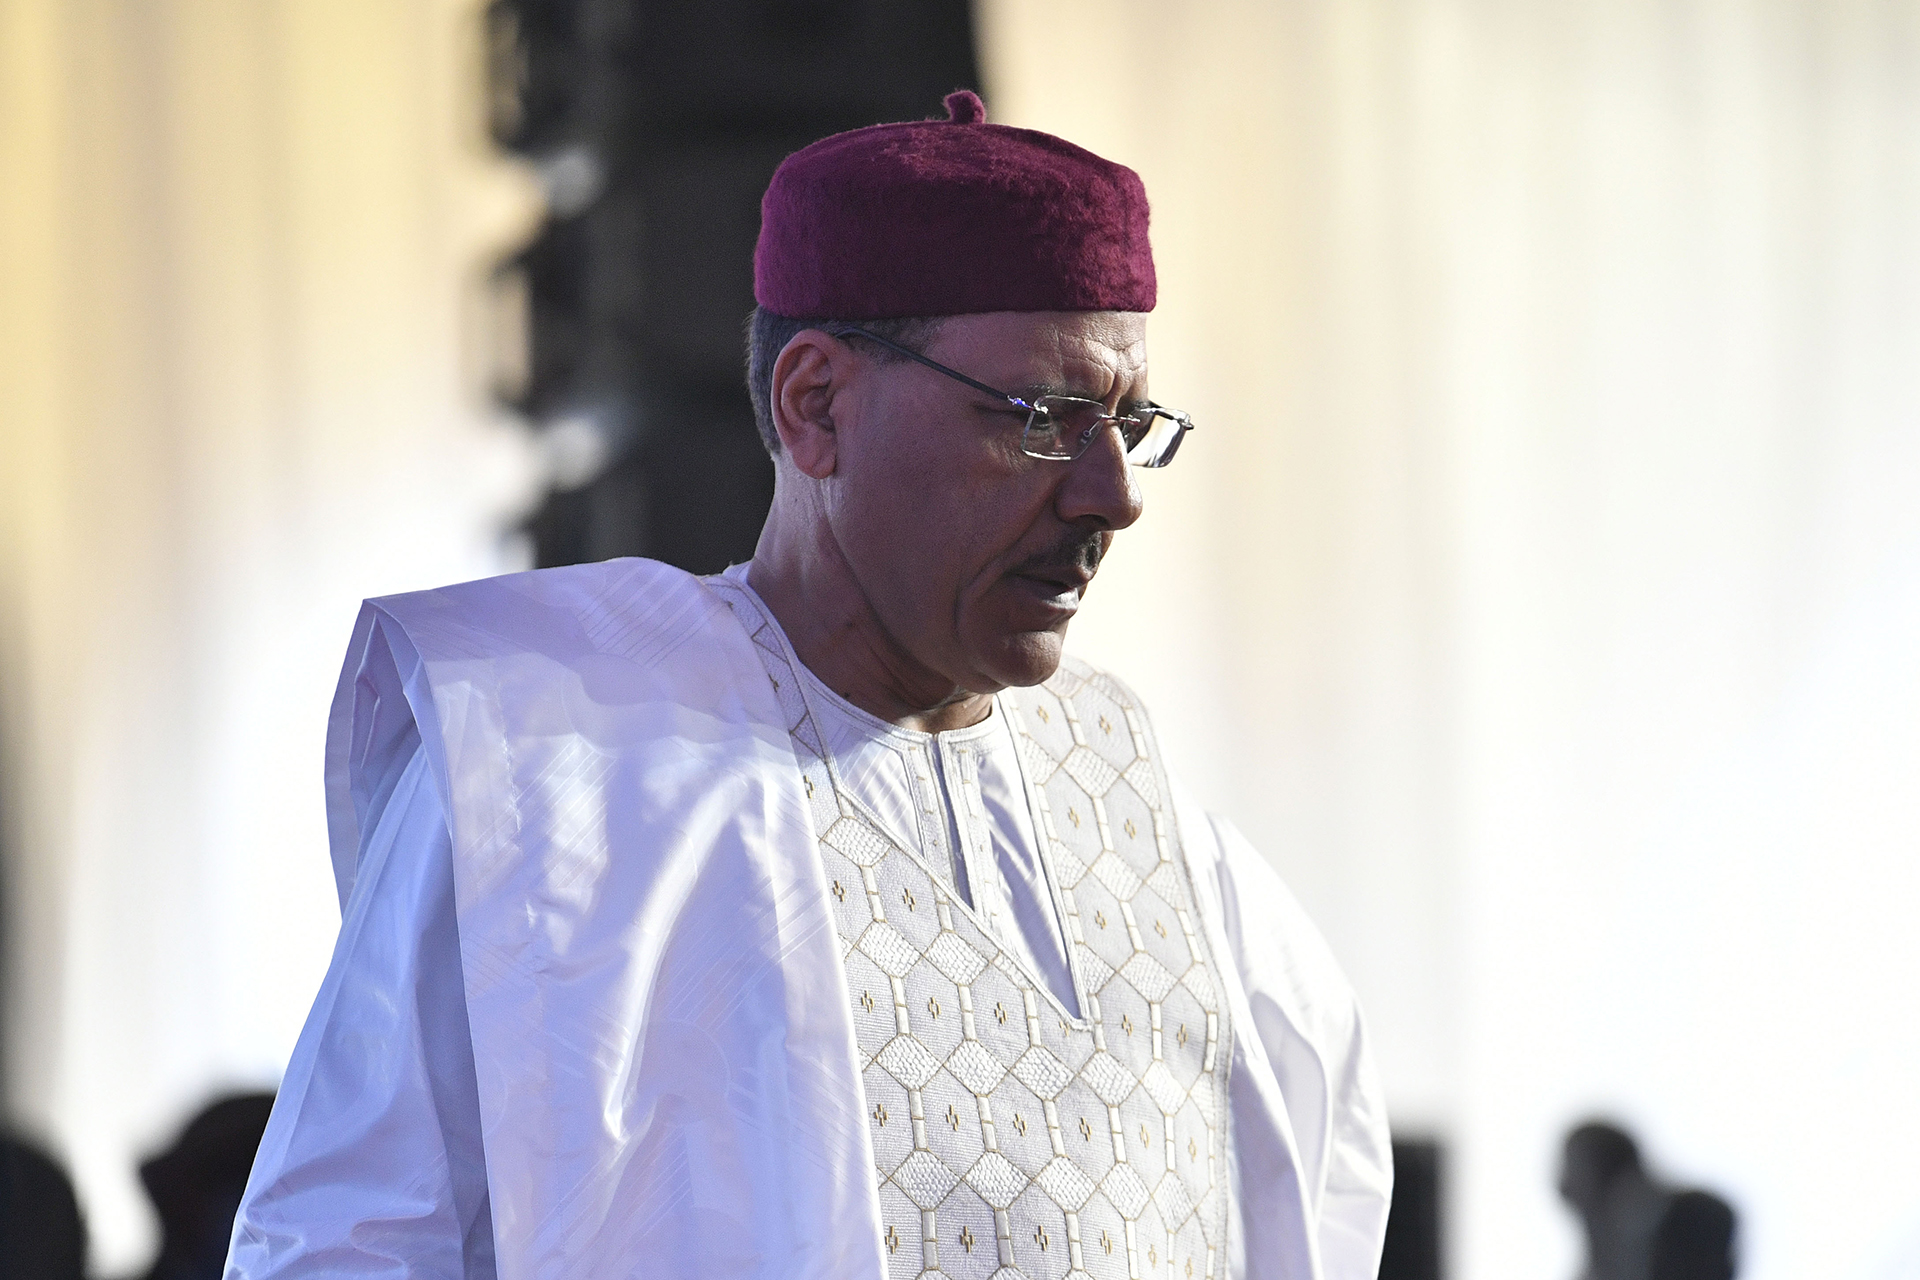 عائلة رئيس النيجر المخلوع: لا أخبار عن بازوم منذ 6 أسابيع | أخبار – البوكس نيوز